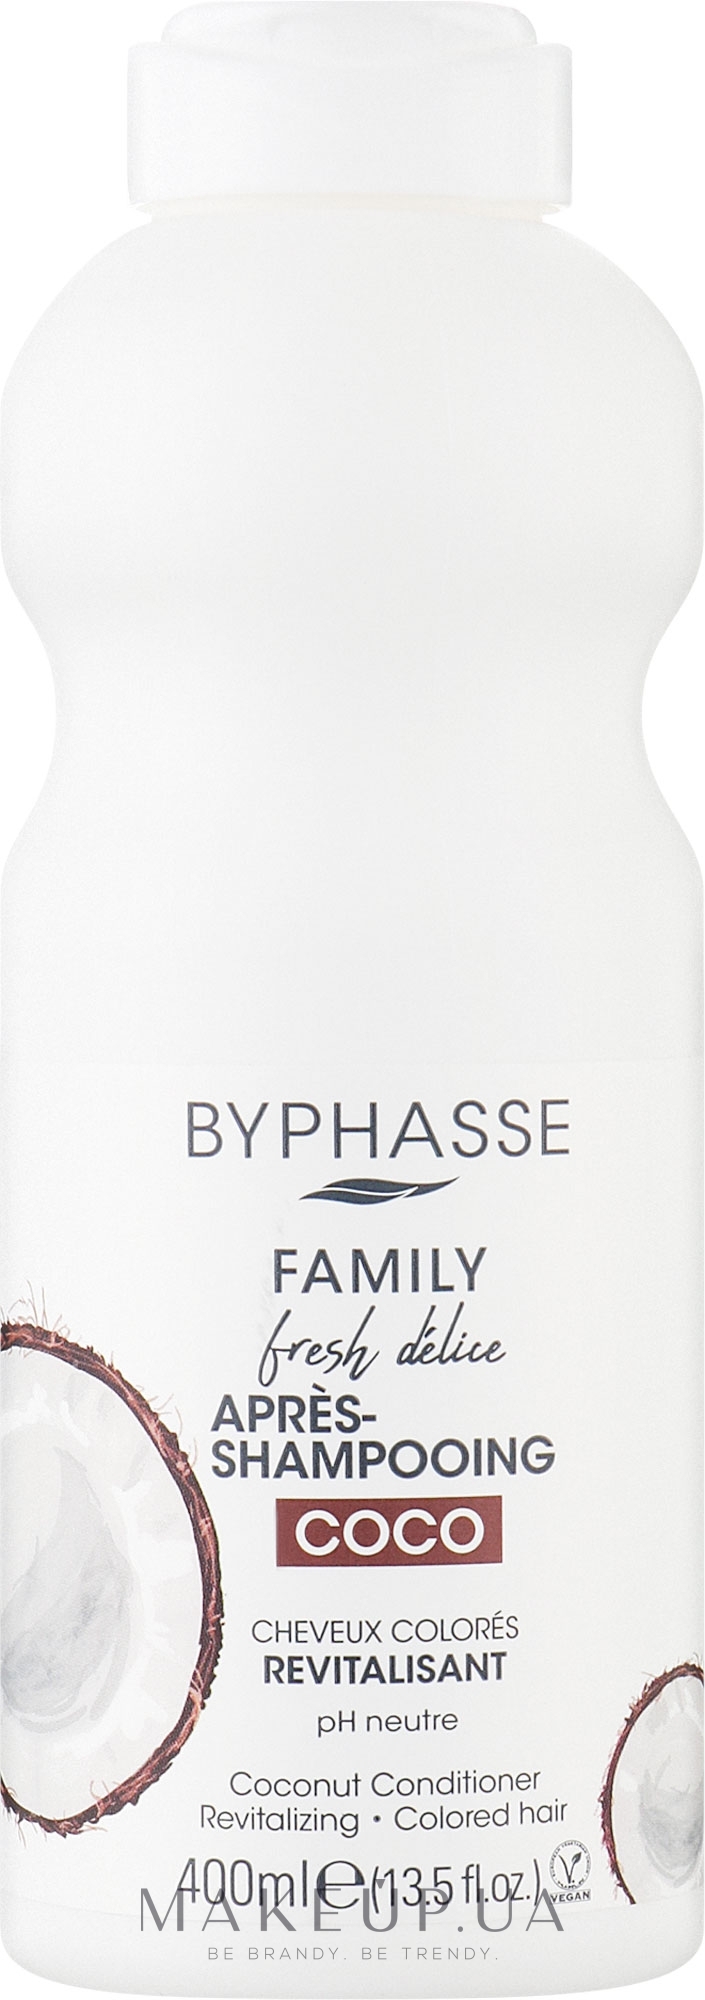 Кондиционер для окрашенных волос с кокосом - Byphasse Family Fresh Delice Conditioner — фото 400ml